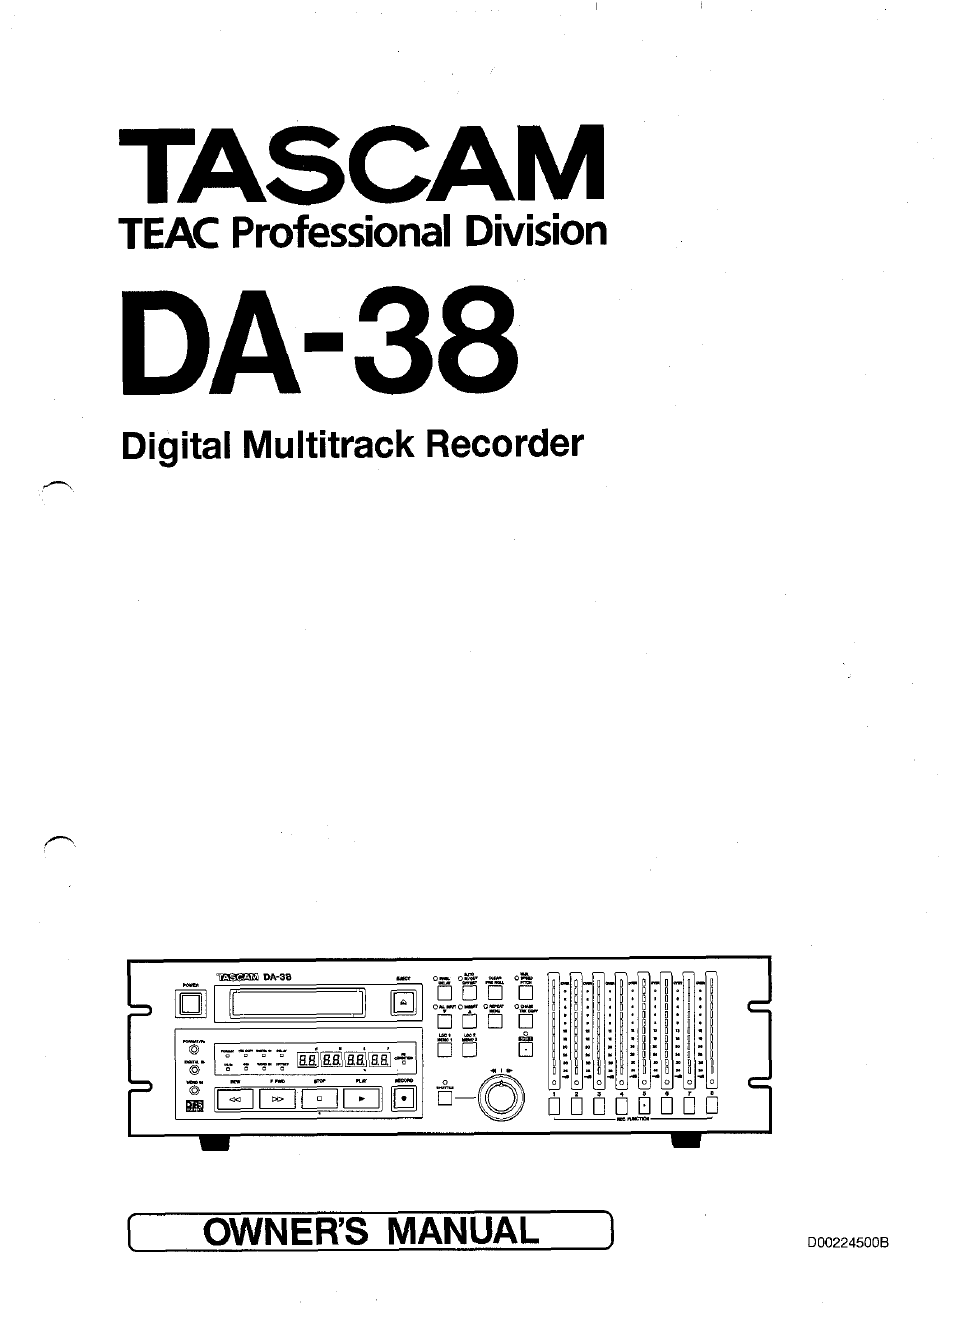 DA-38